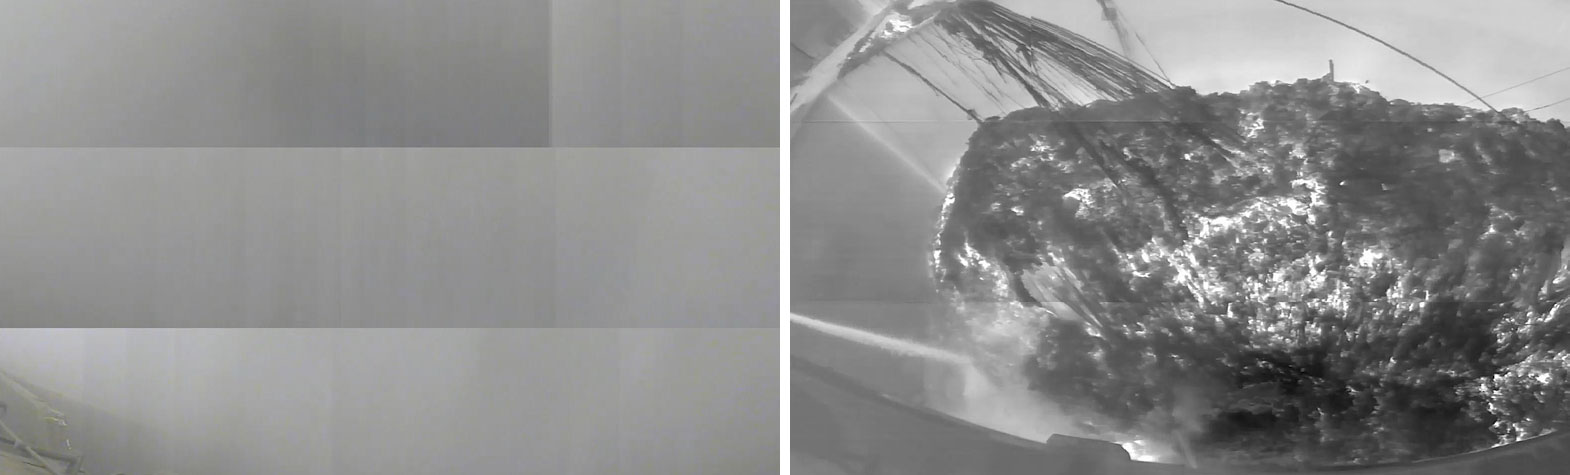 En la imagen térmica, la superficie de control es claramente visible incluso con humo y vapor.